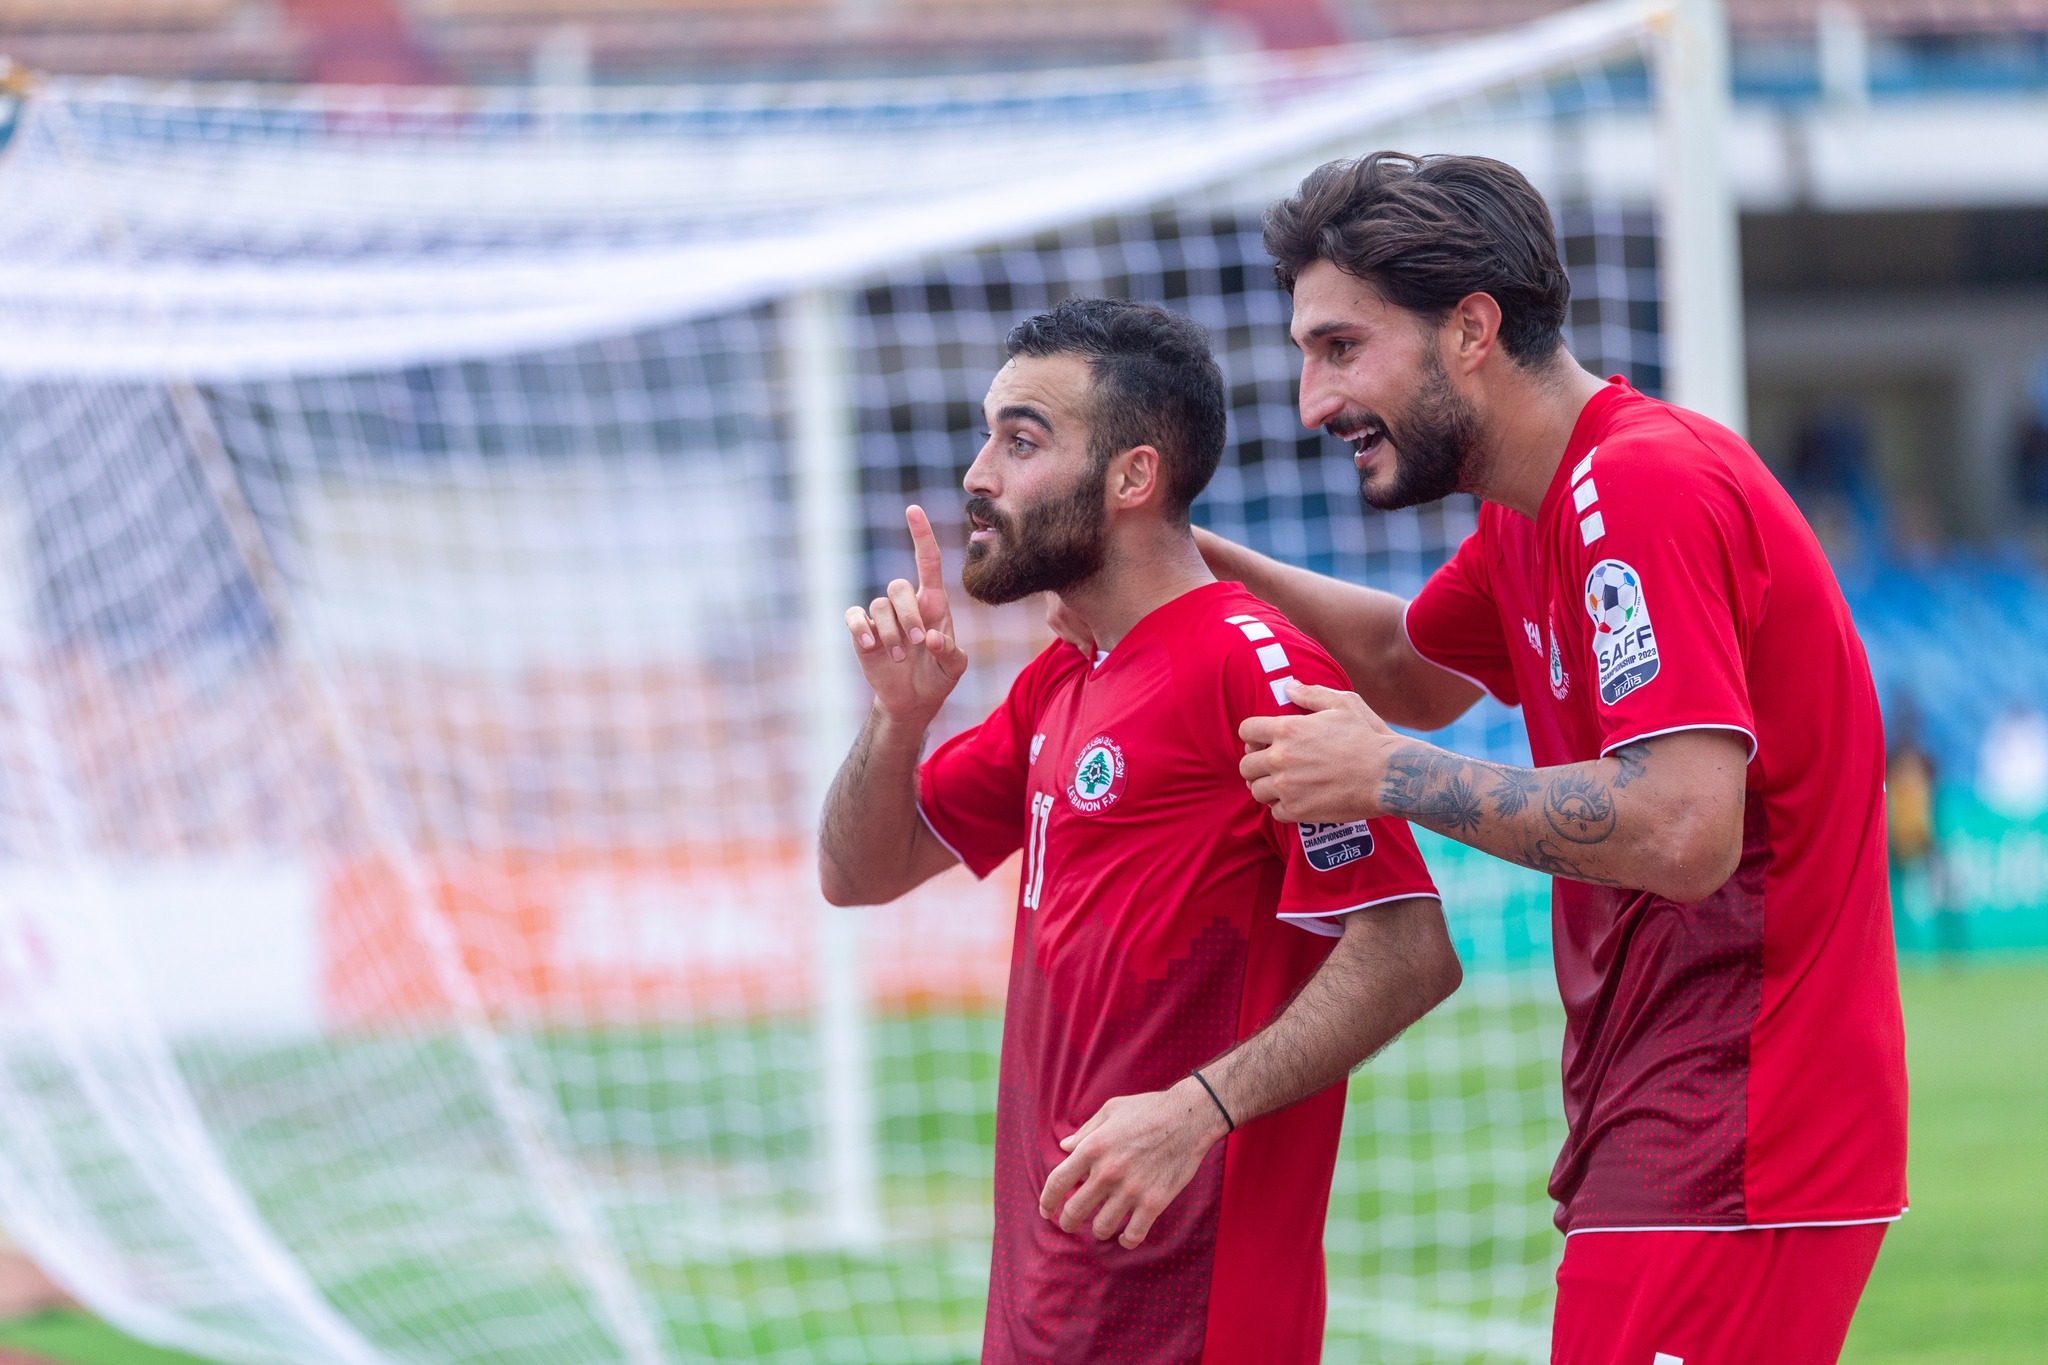 Lebanon’s second win in a row in SAFF Championship